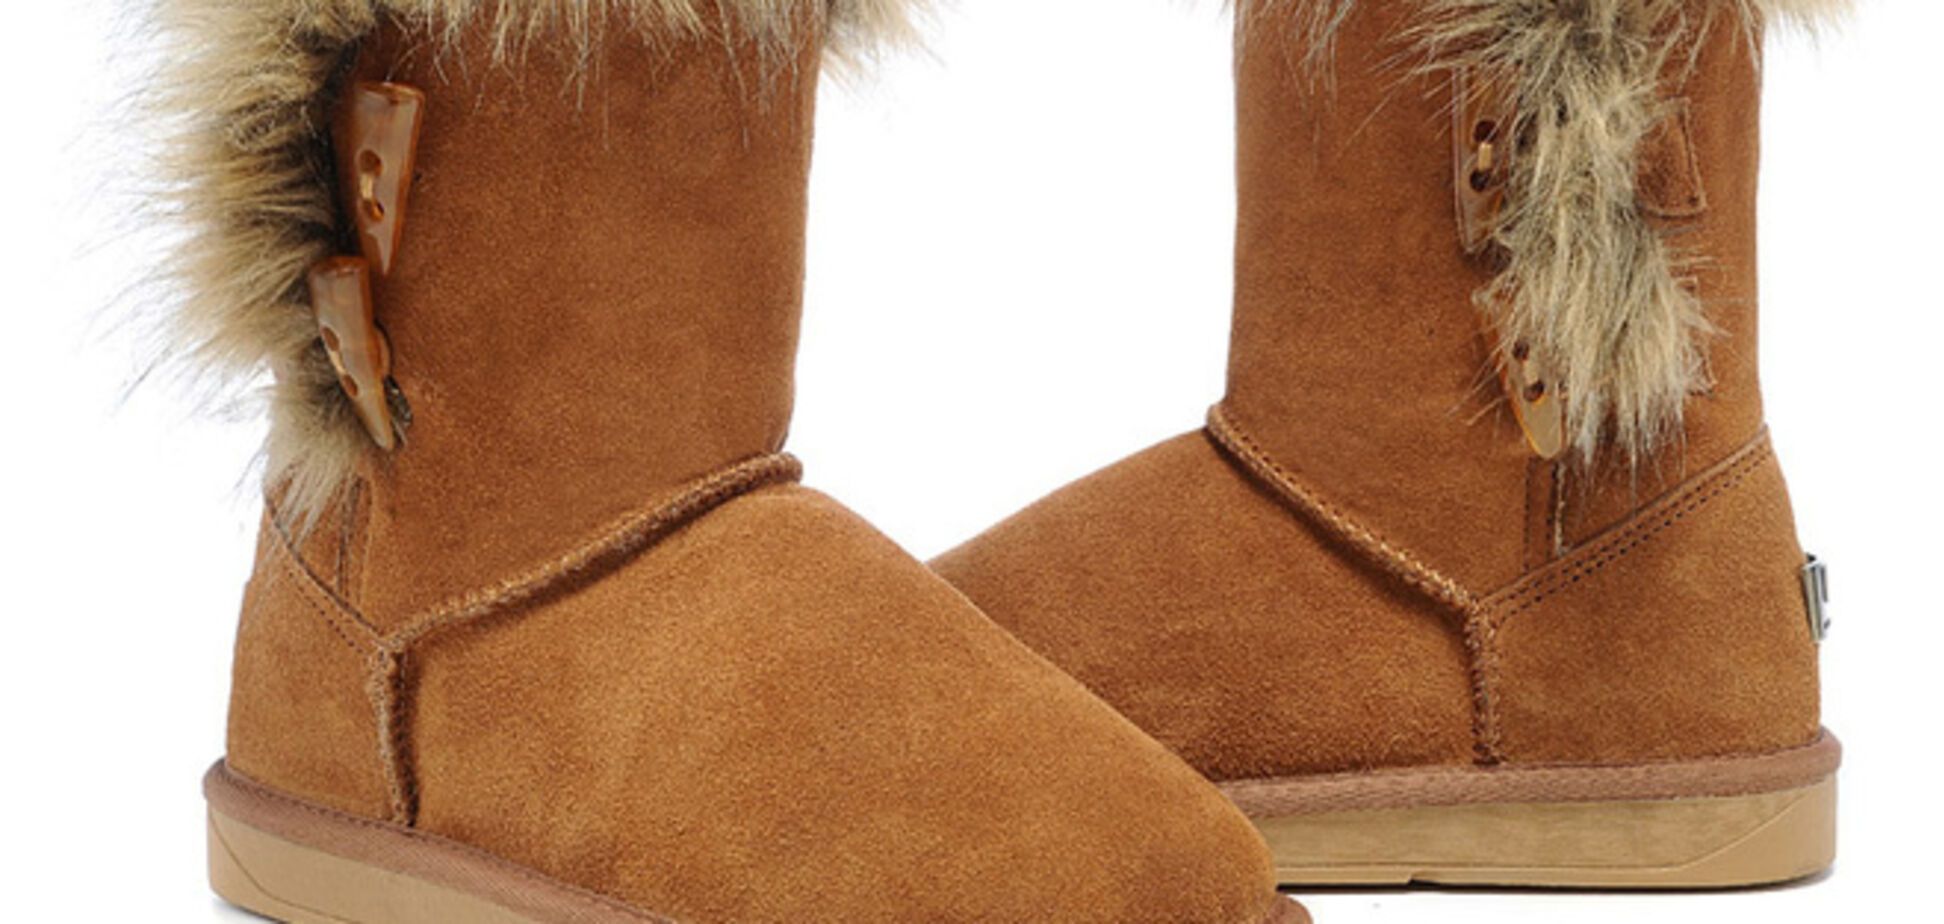 Как выбрать хорошую зимнюю обувь. Признаки качества 